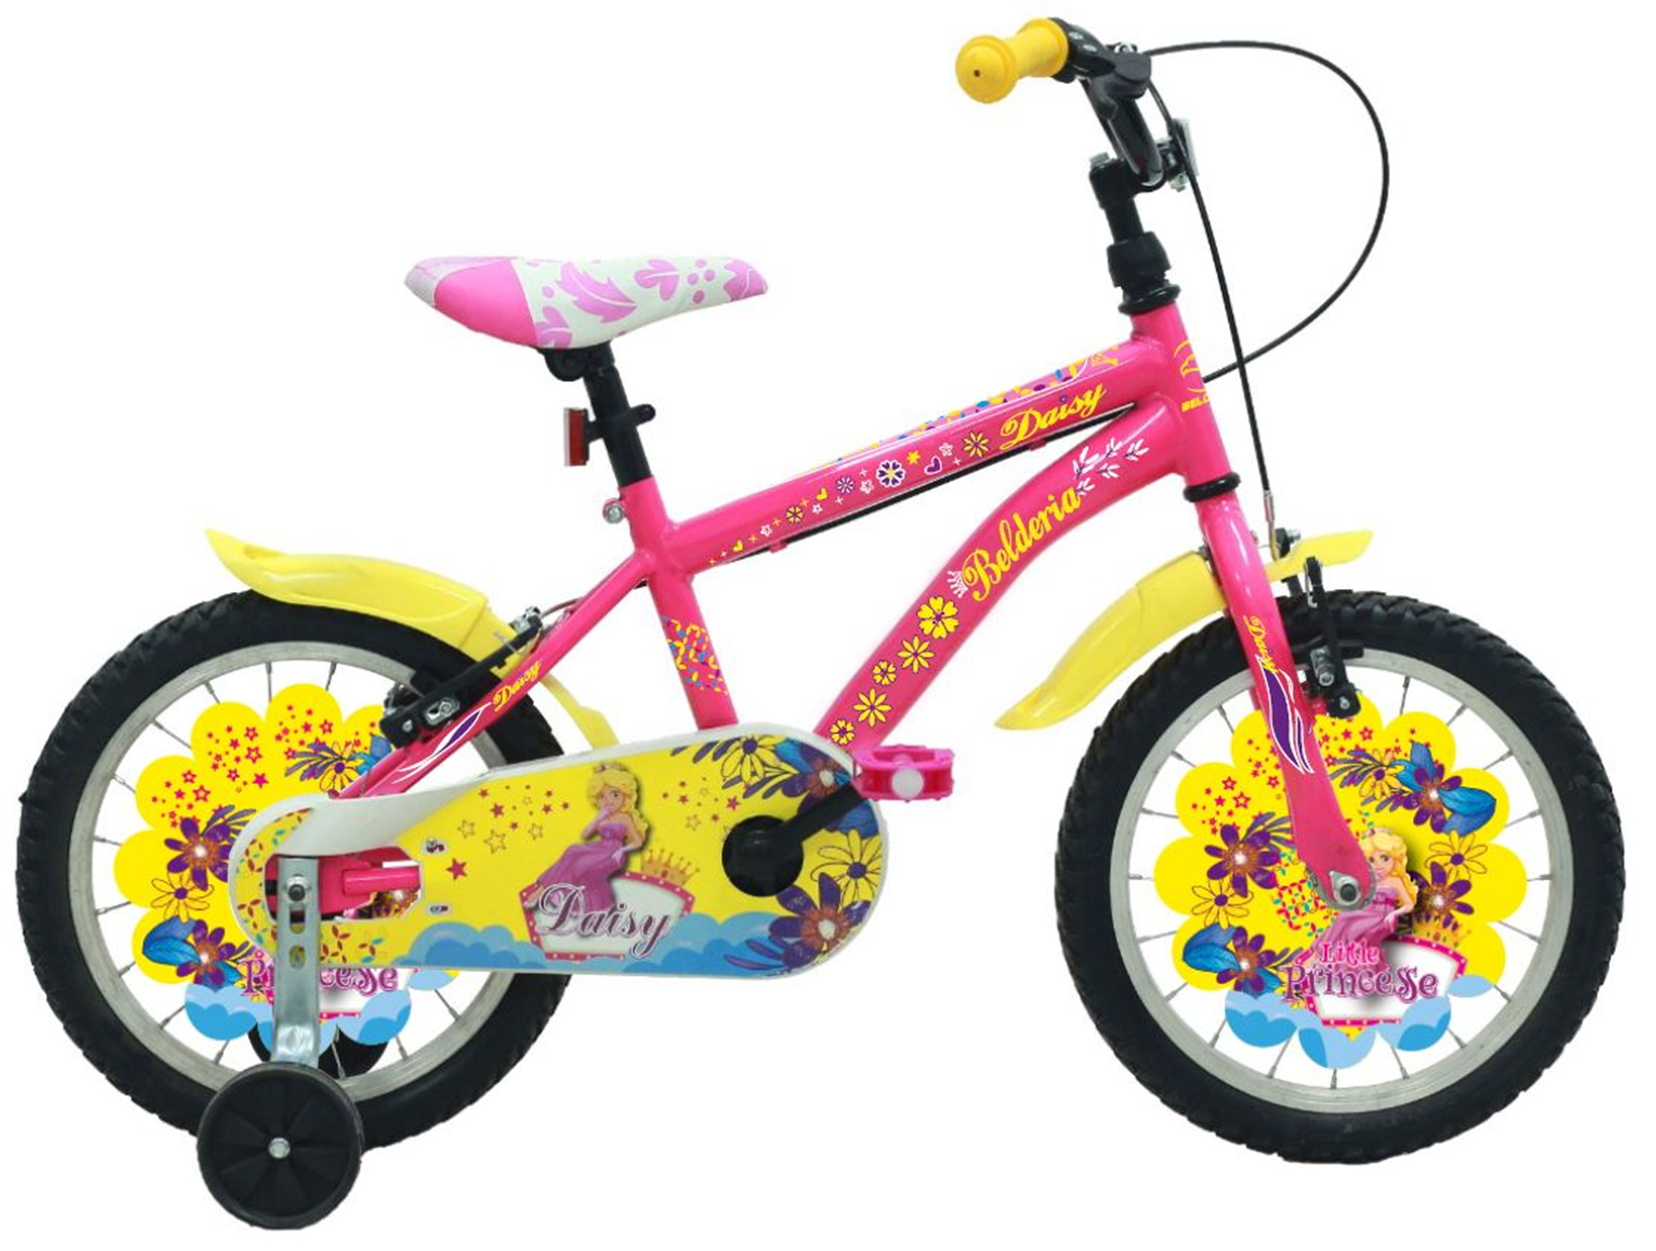 Vision Bicicleta copii belderia daisy, culoare roz, roata 16, cadru din otel